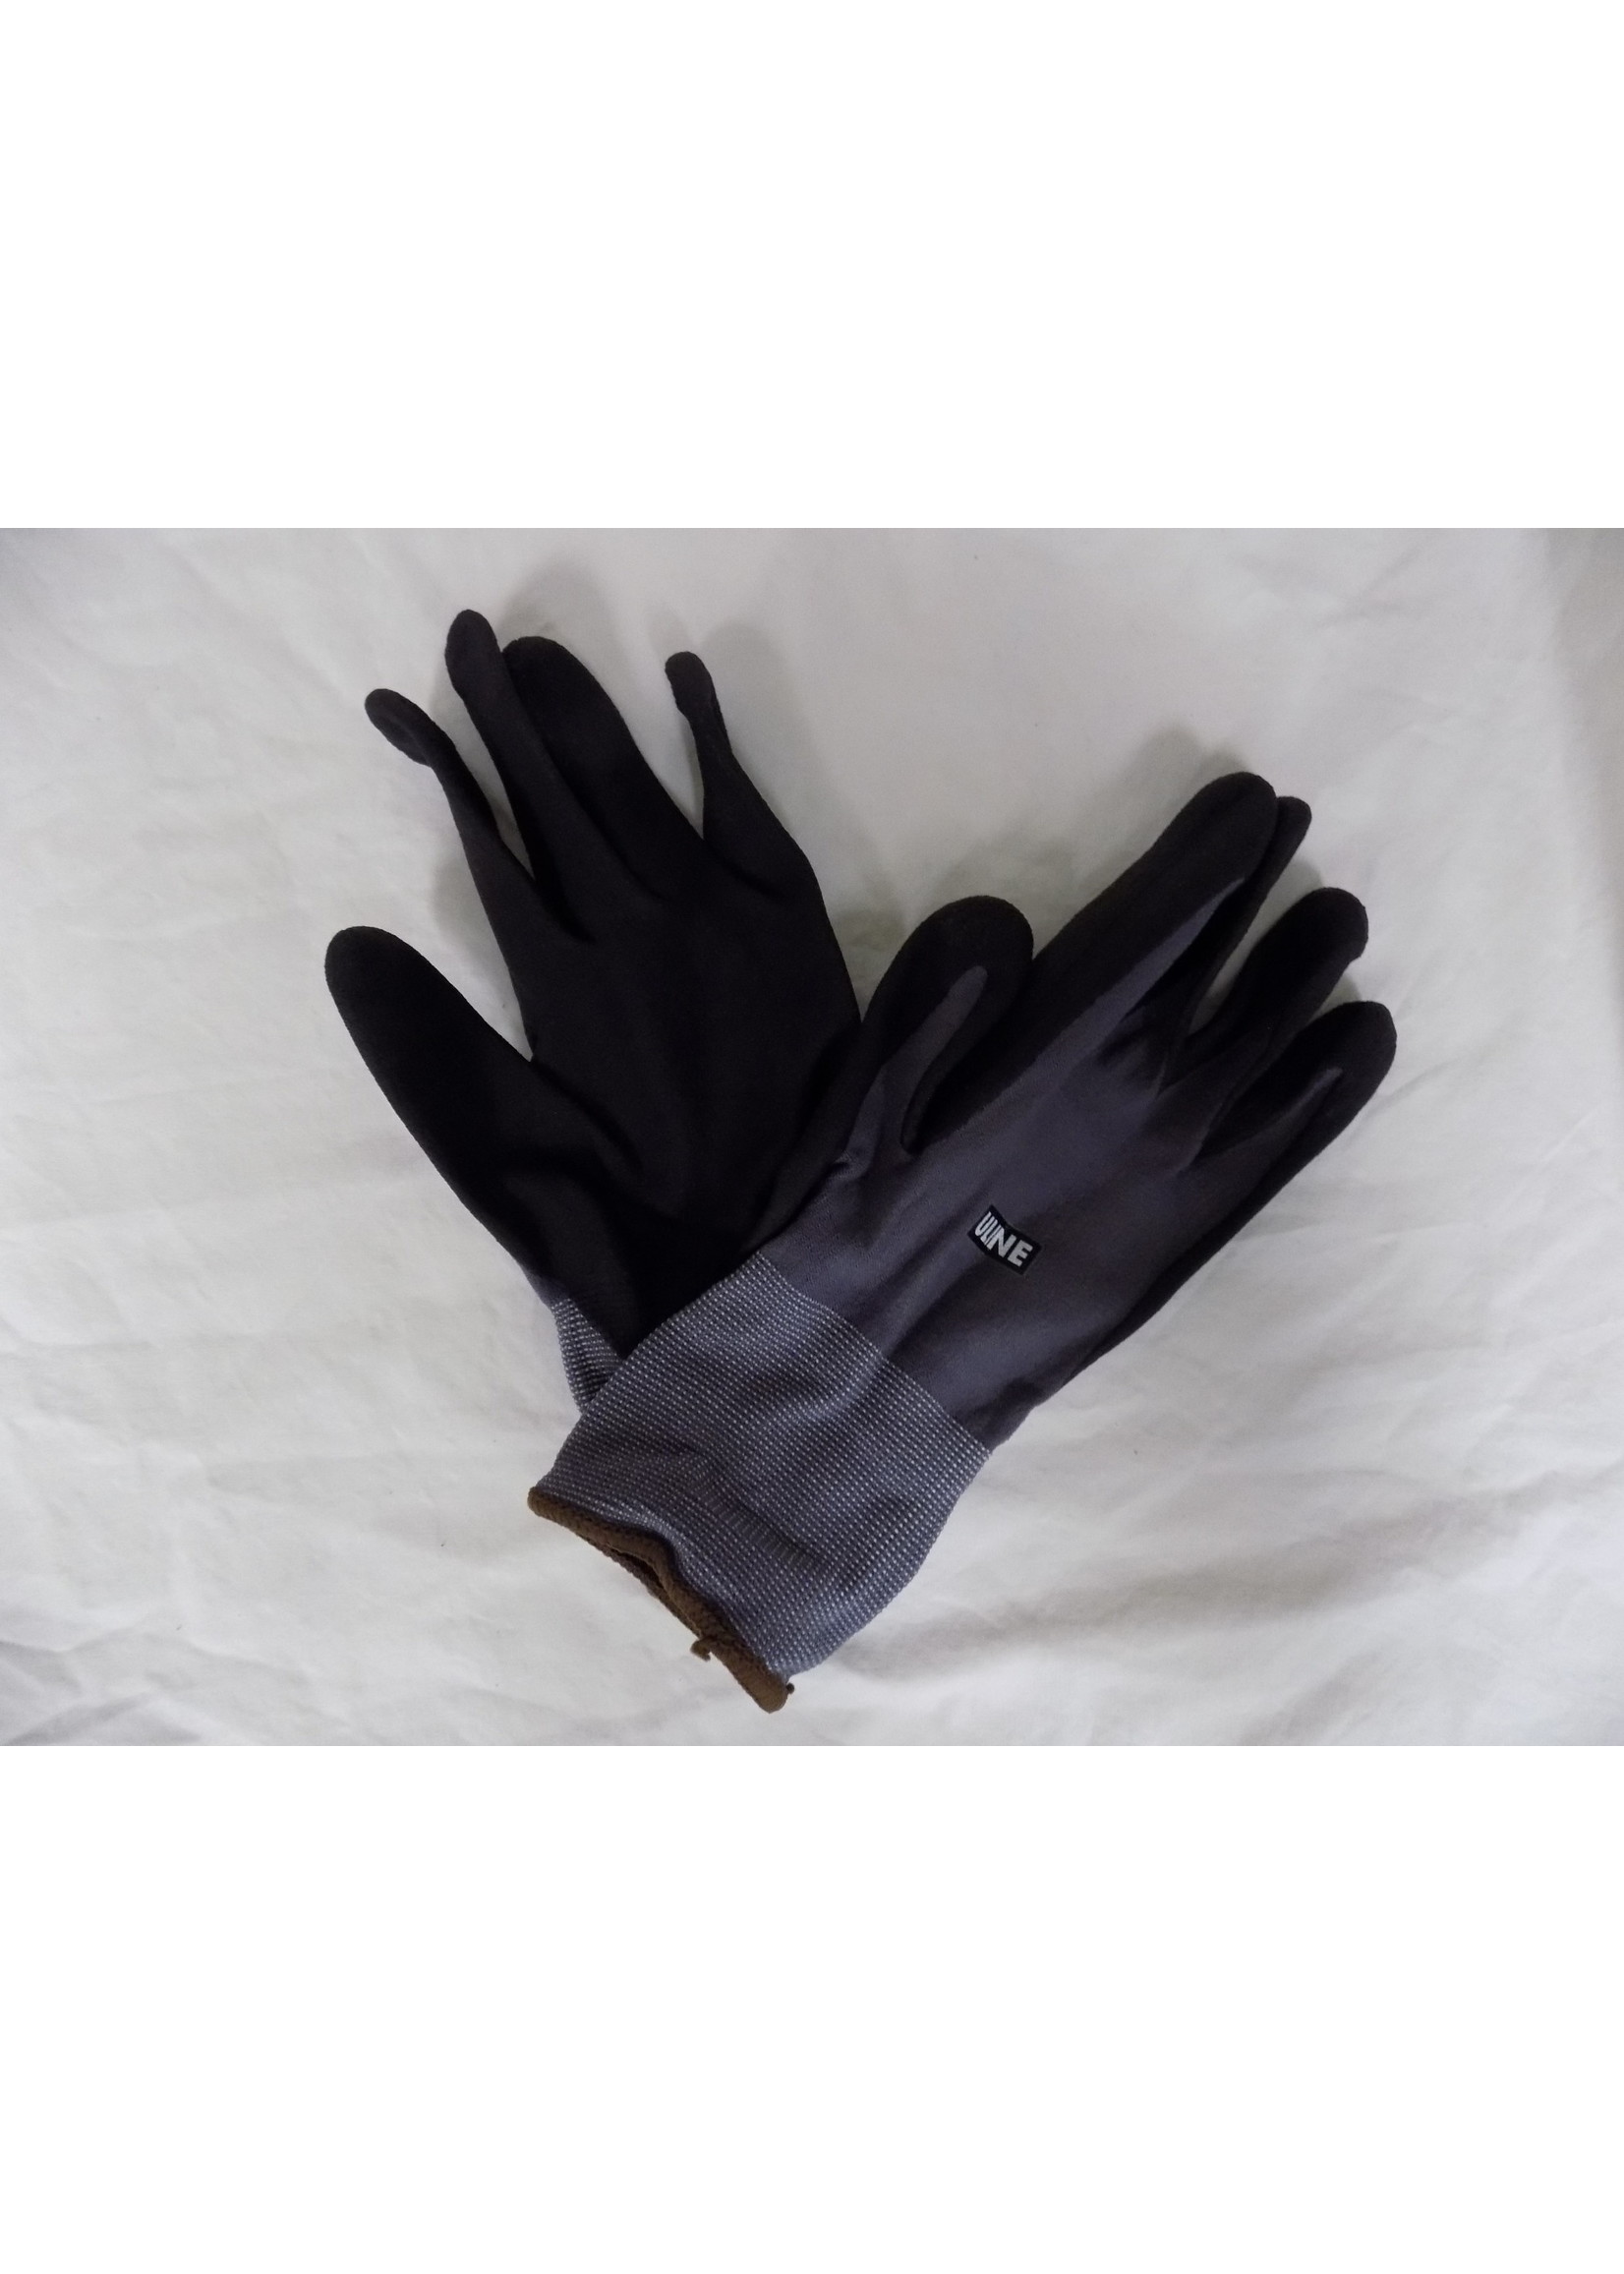 https://cdn.shoplightspeed.com/shops/648076/files/45866547/1652x2313x2/coolflex-uline-coolflex-nitrile-gloves-small.jpg